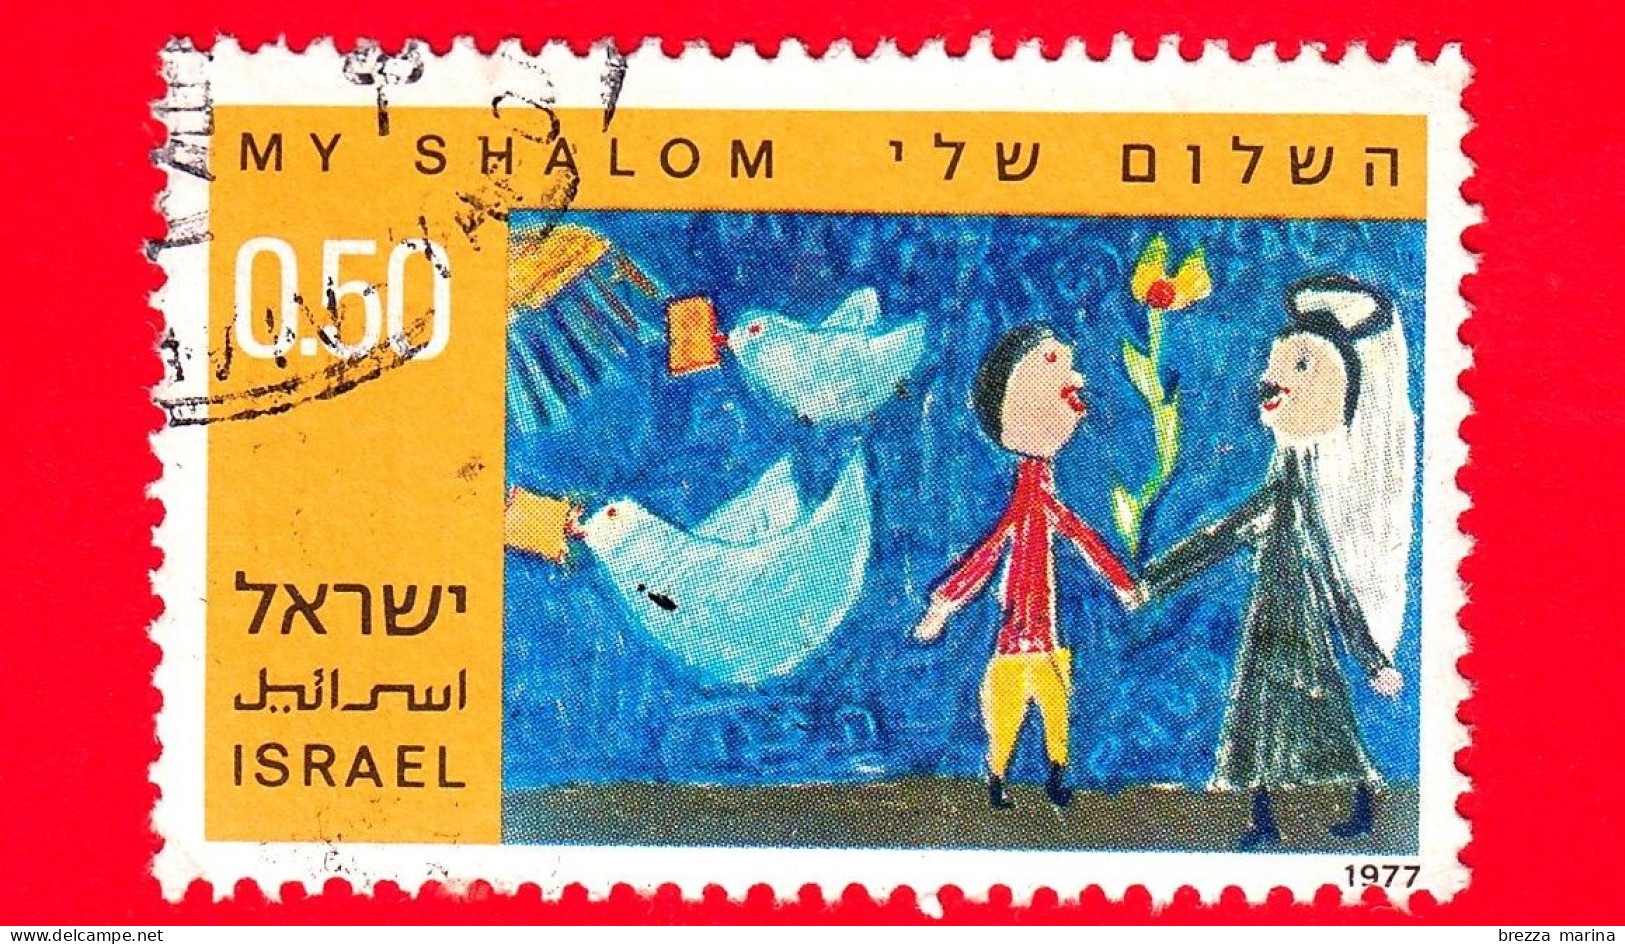 ISRAELE - Usato - 1977 - Disegni Dei Bambini Sulla Pace - Ebreo E Arabo Si Stringono La Mano - Shalom - 0.50 - Usati (senza Tab)